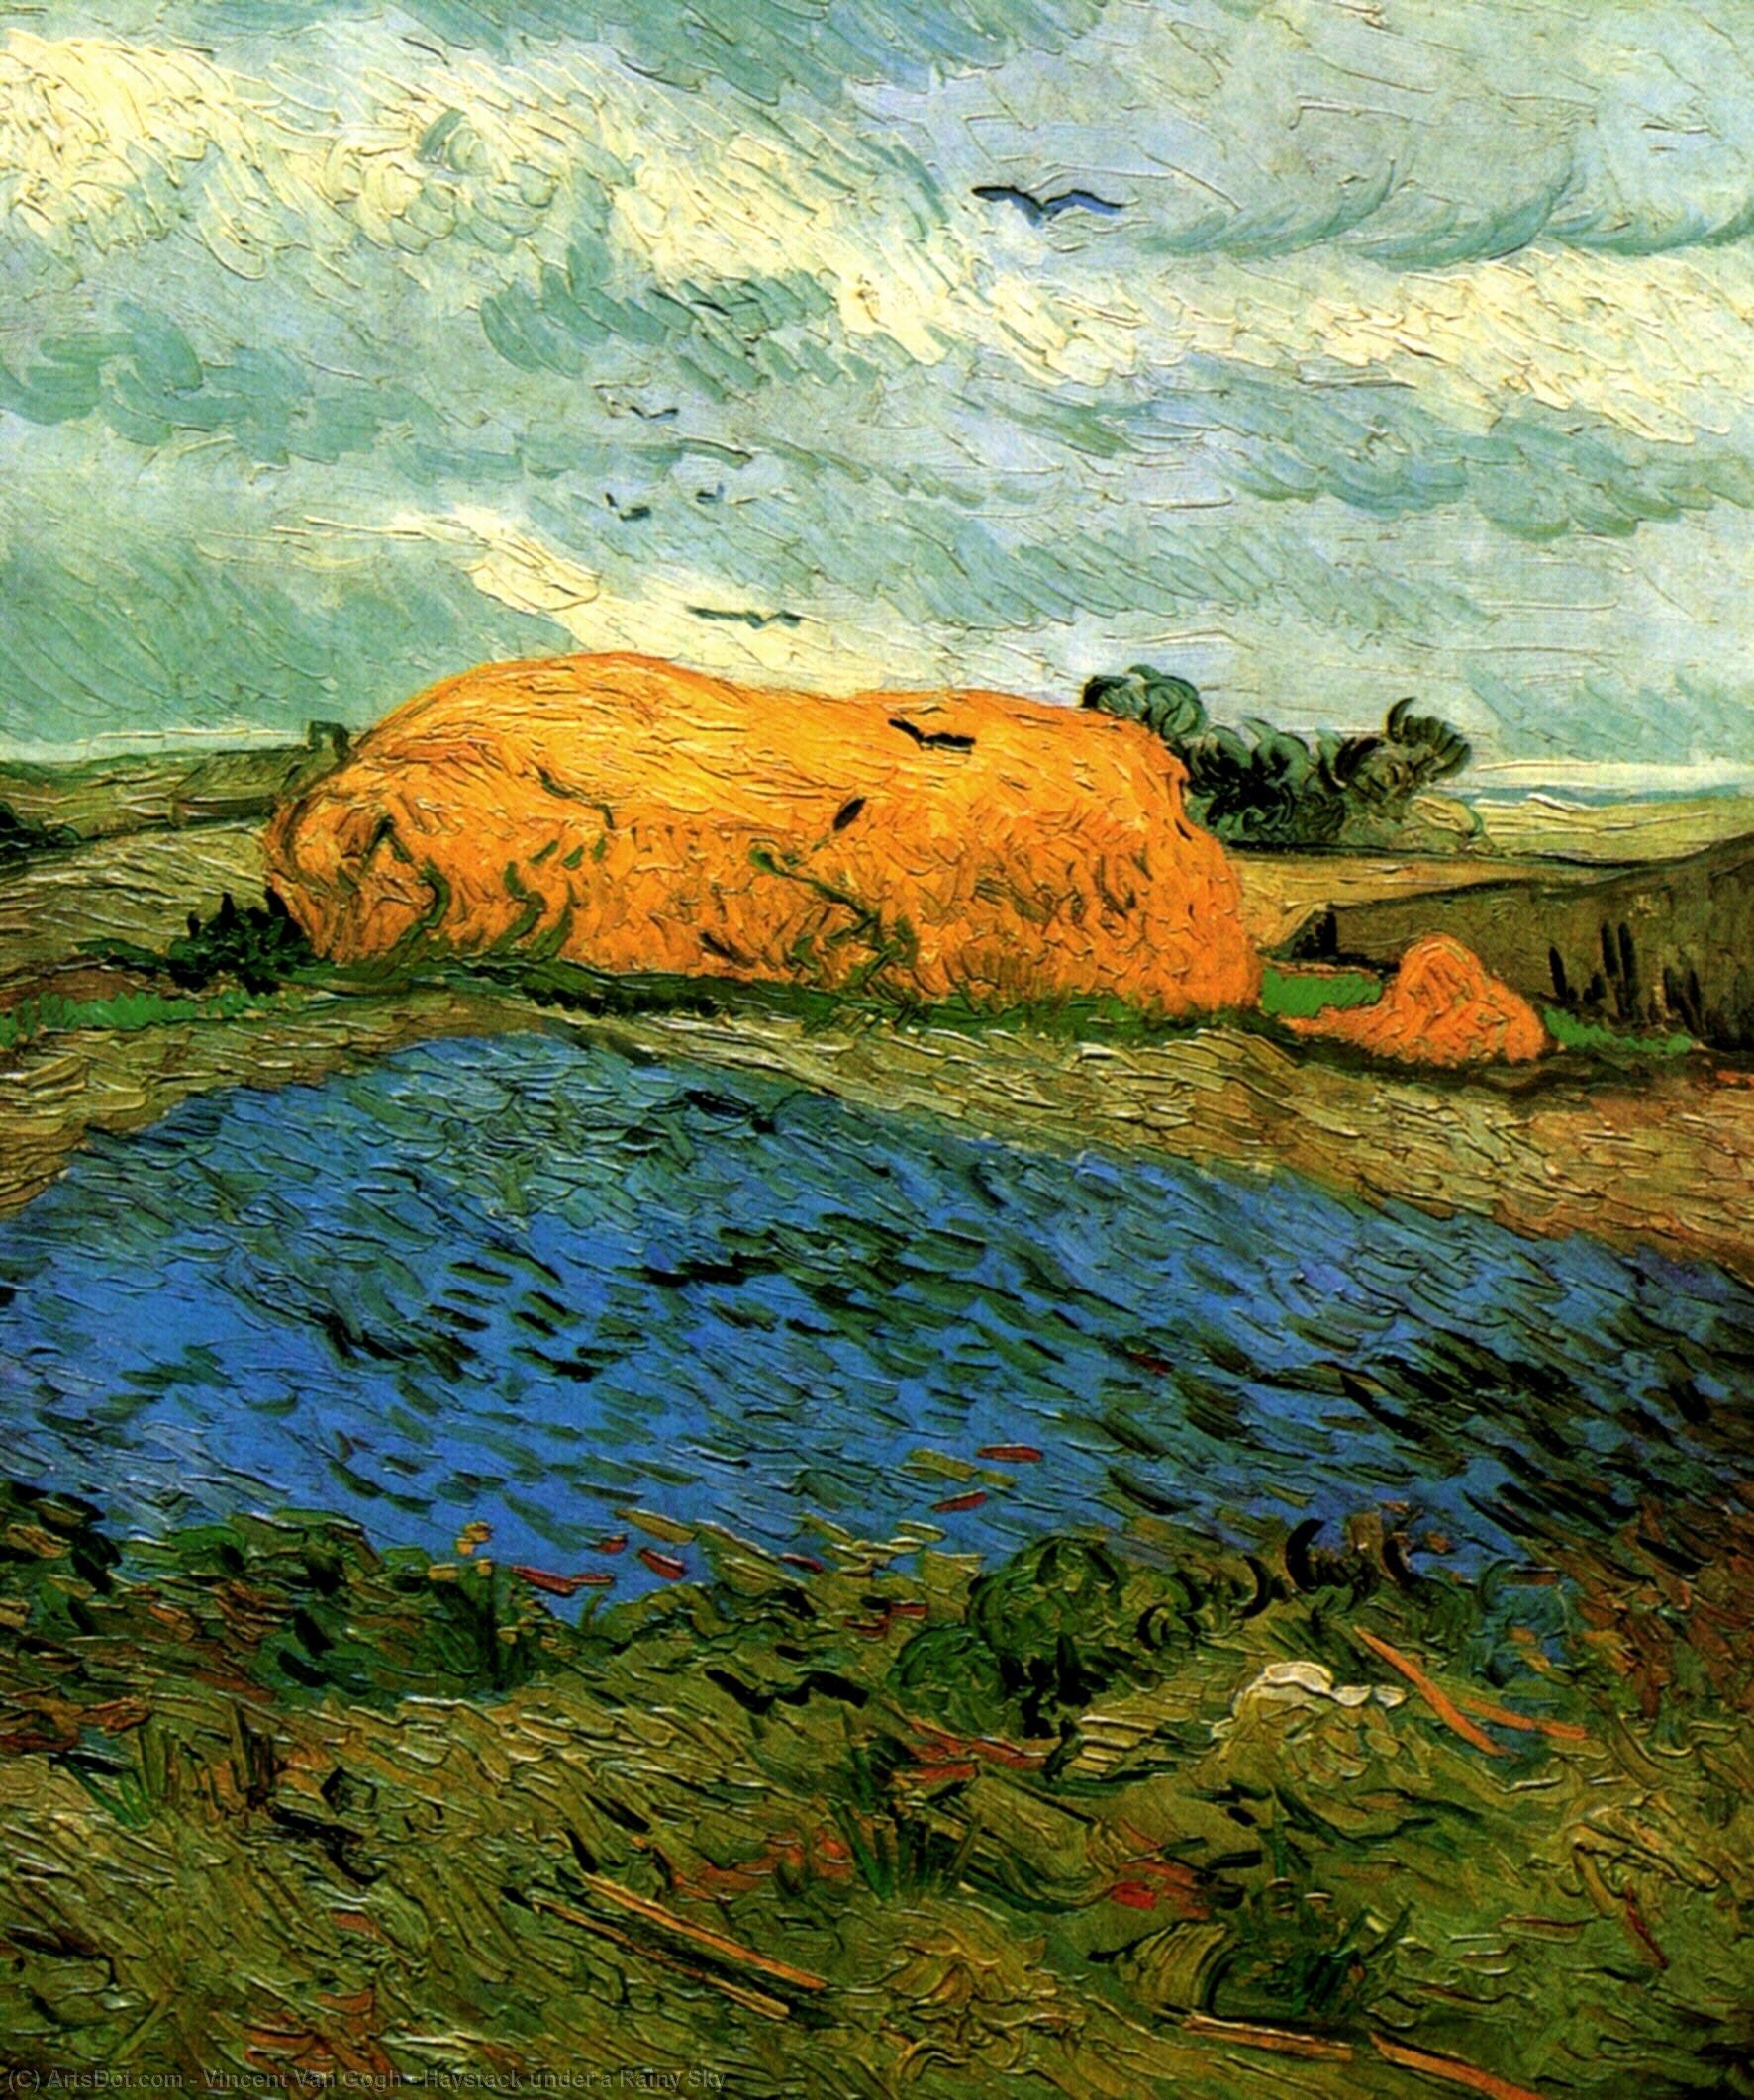 WikiOO.org - Encyclopedia of Fine Arts - Malba, Artwork Vincent Van Gogh - Haystack under a Rainy Sky